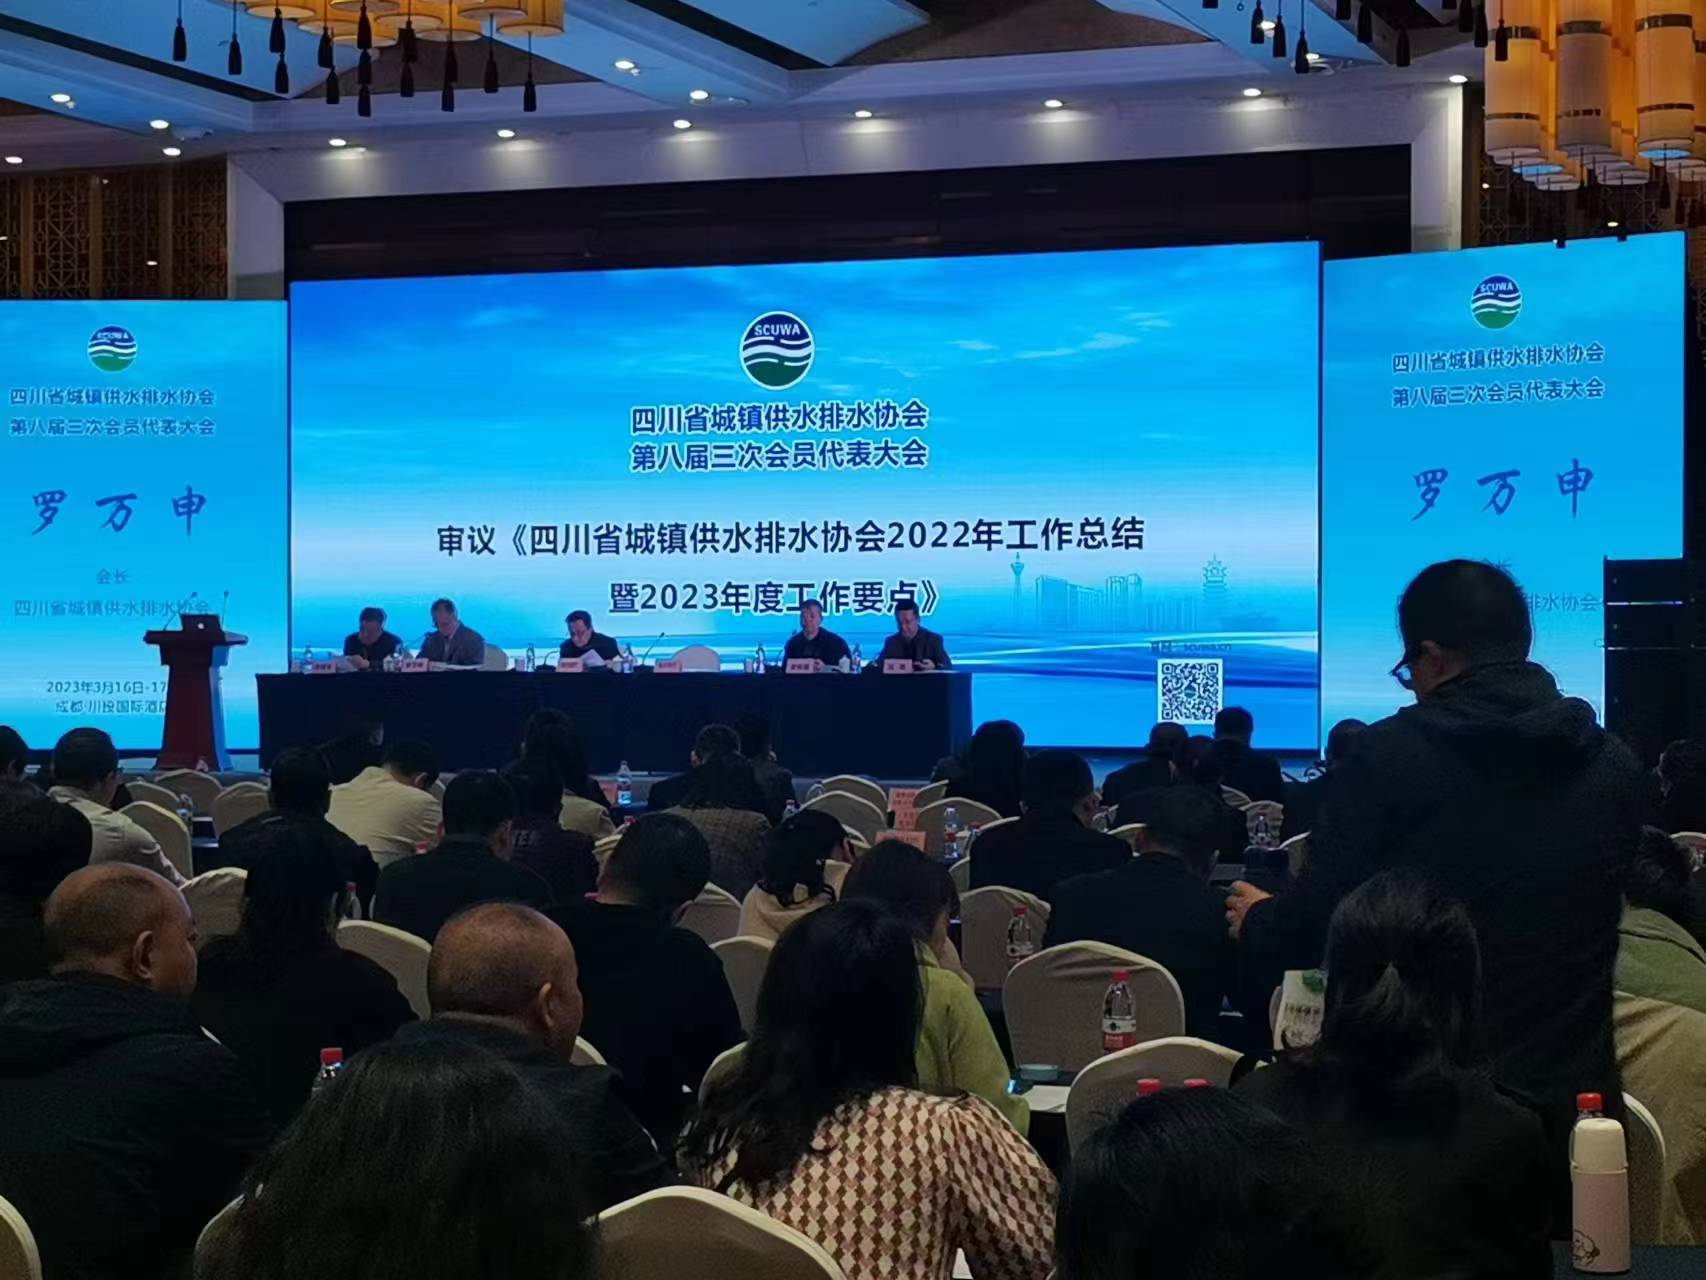 熱烈祝賀四川省城鎮供水排水協會順利召開 